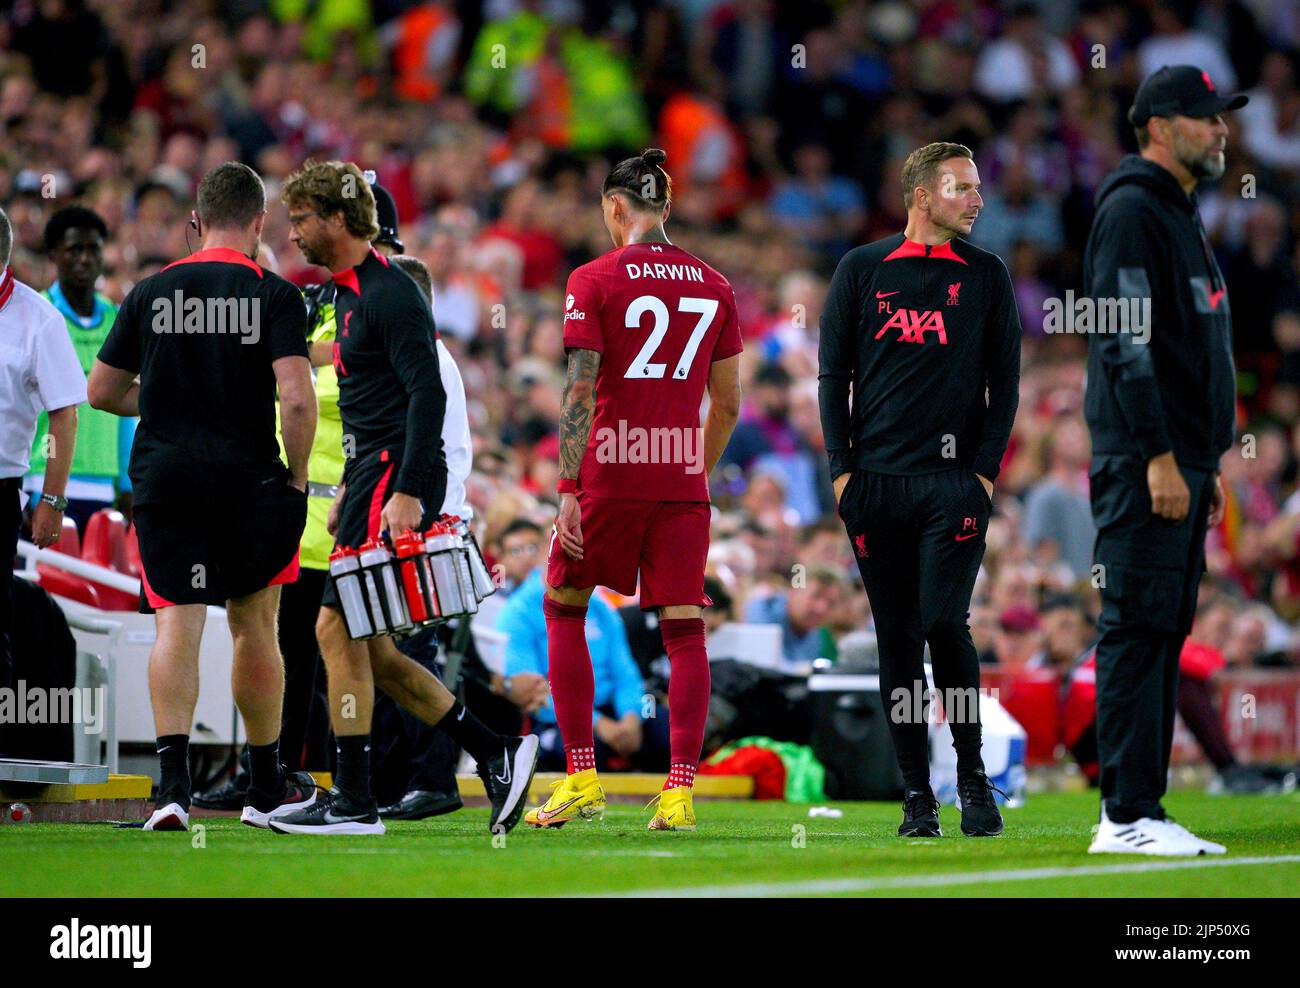 Darwin Nunez (centro) del Liverpool abandona el campo después de recibir una tarjeta roja durante el partido de la Premier League en Anfield, Liverpool. Fecha de la foto: Lunes 15 de agosto de 2022. Foto de stock